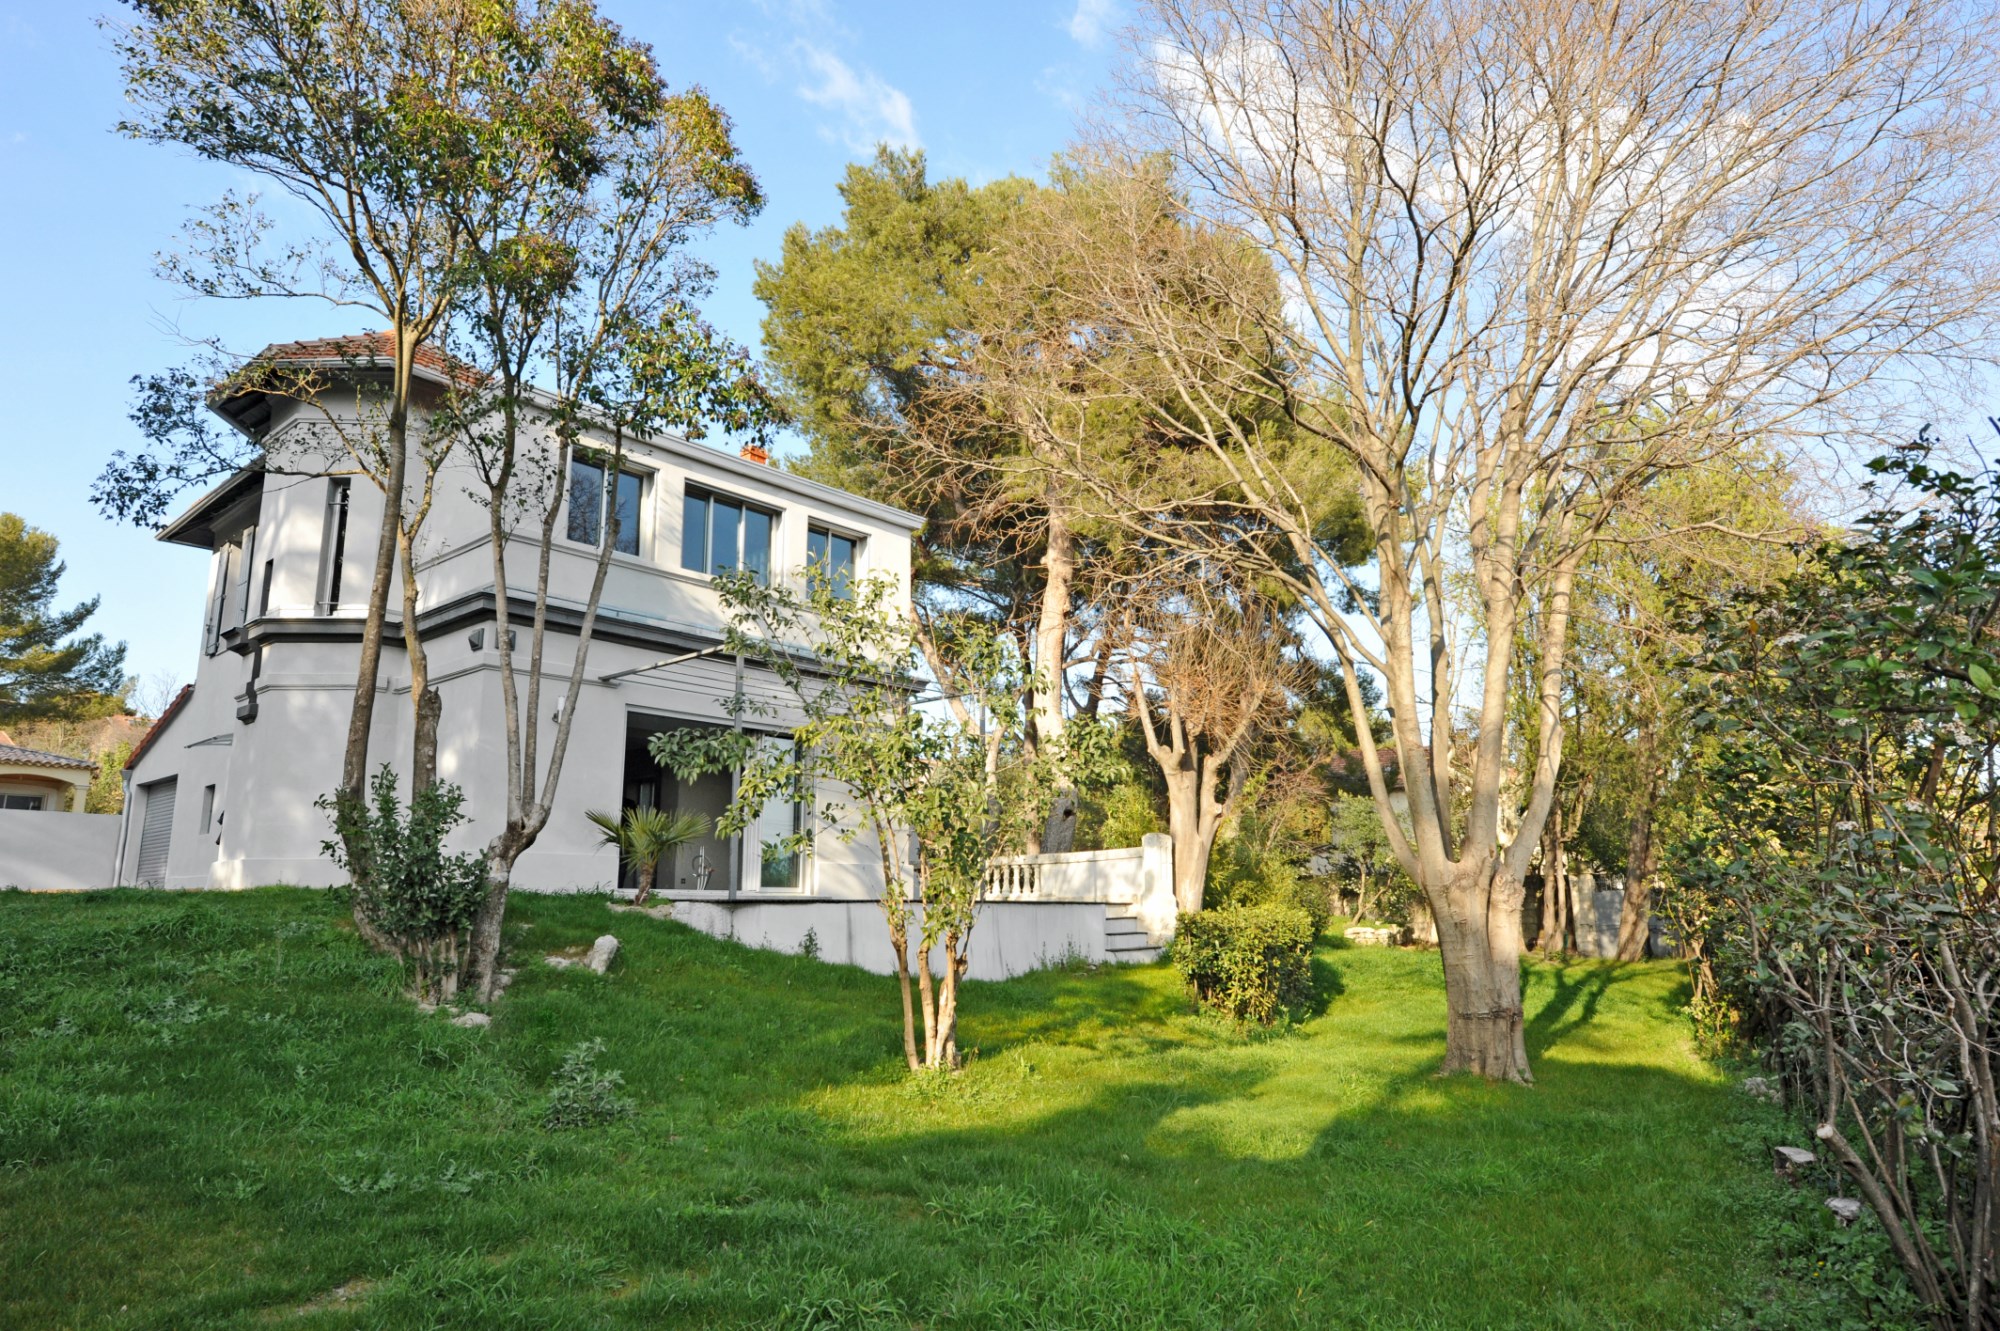 Vente Proche d'Avignon,  à vendre, belle maison bourgeoise avec jardin et des jolies vues sur la vallée du Rhône